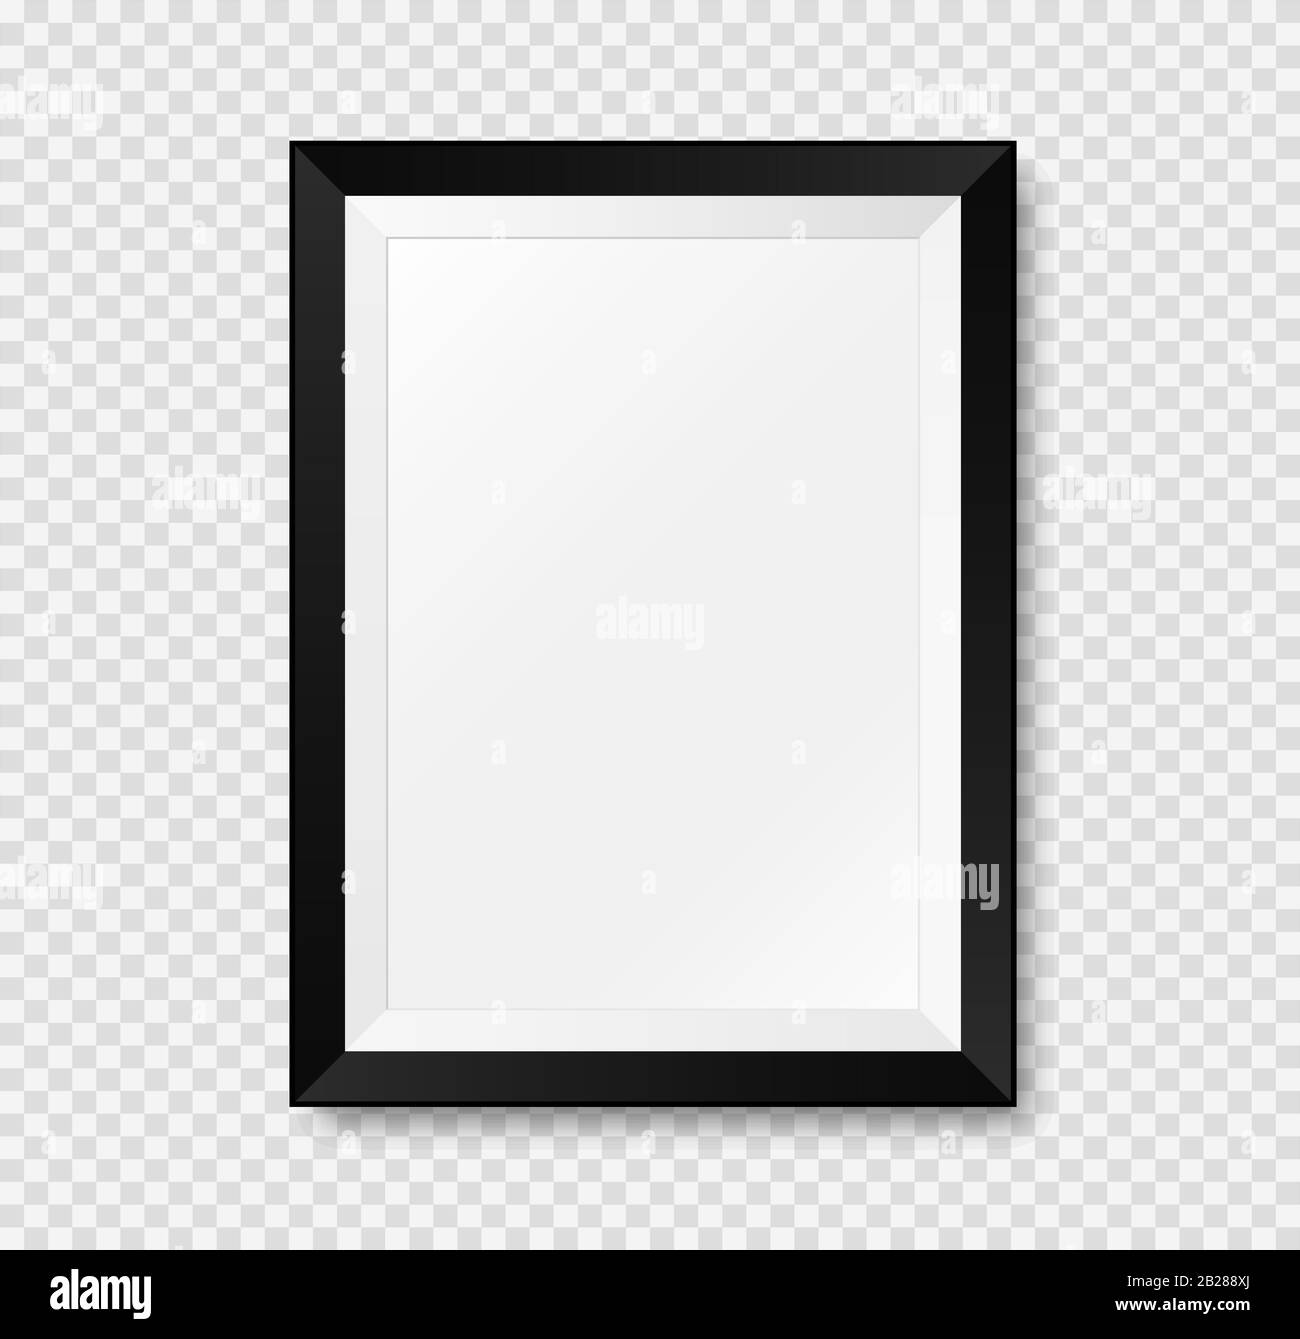 Immagine realistica mockup frame. Vettore Isolato su sfondo trasparente Illustrazione Vettoriale